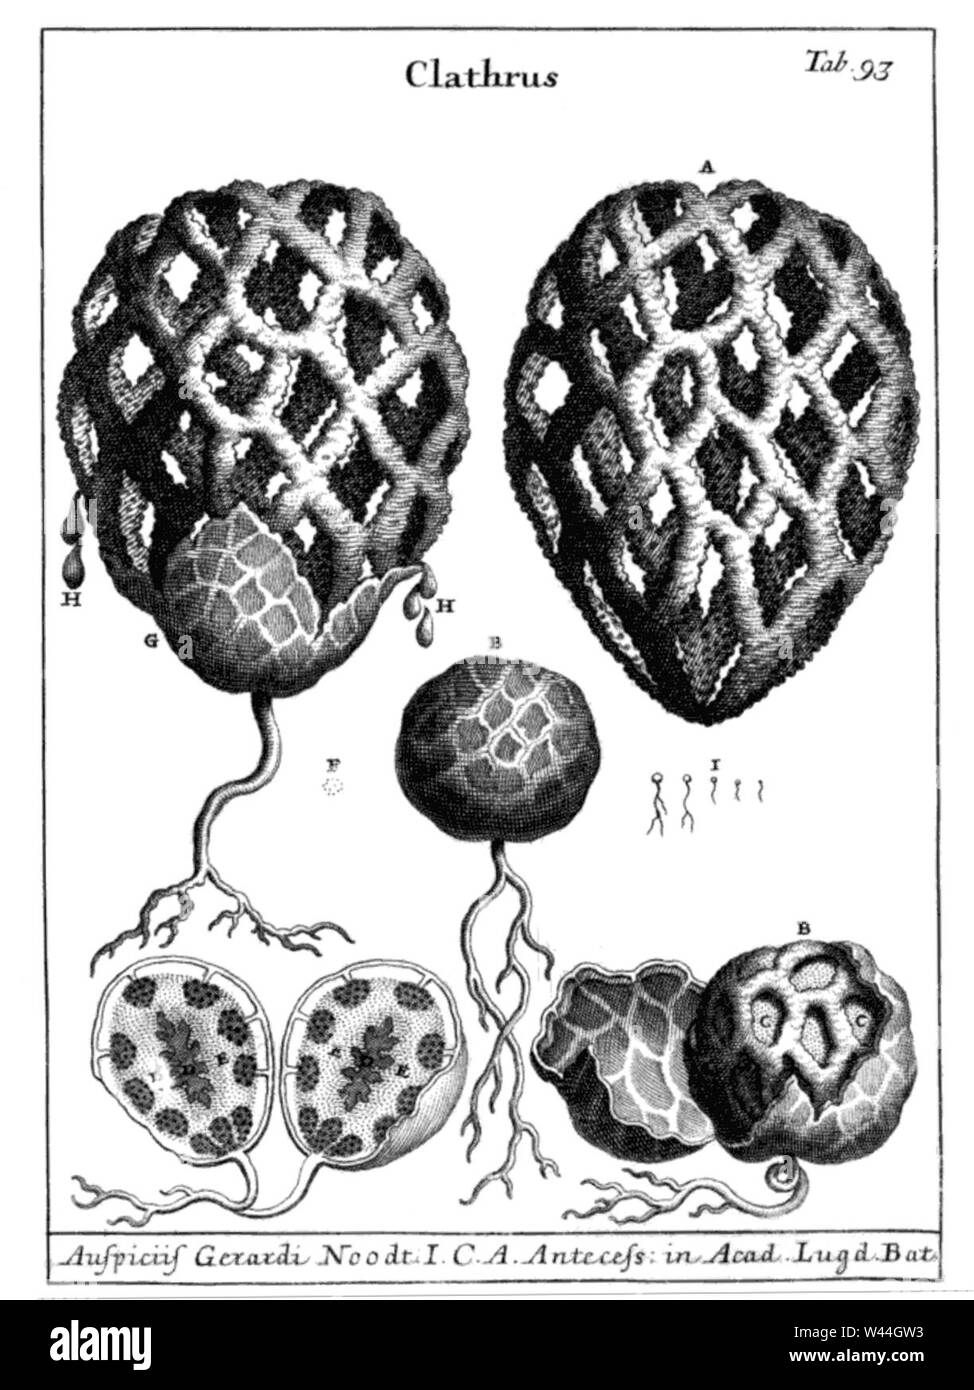 Clathrus ruber by Micheli 1729. Stock Photo